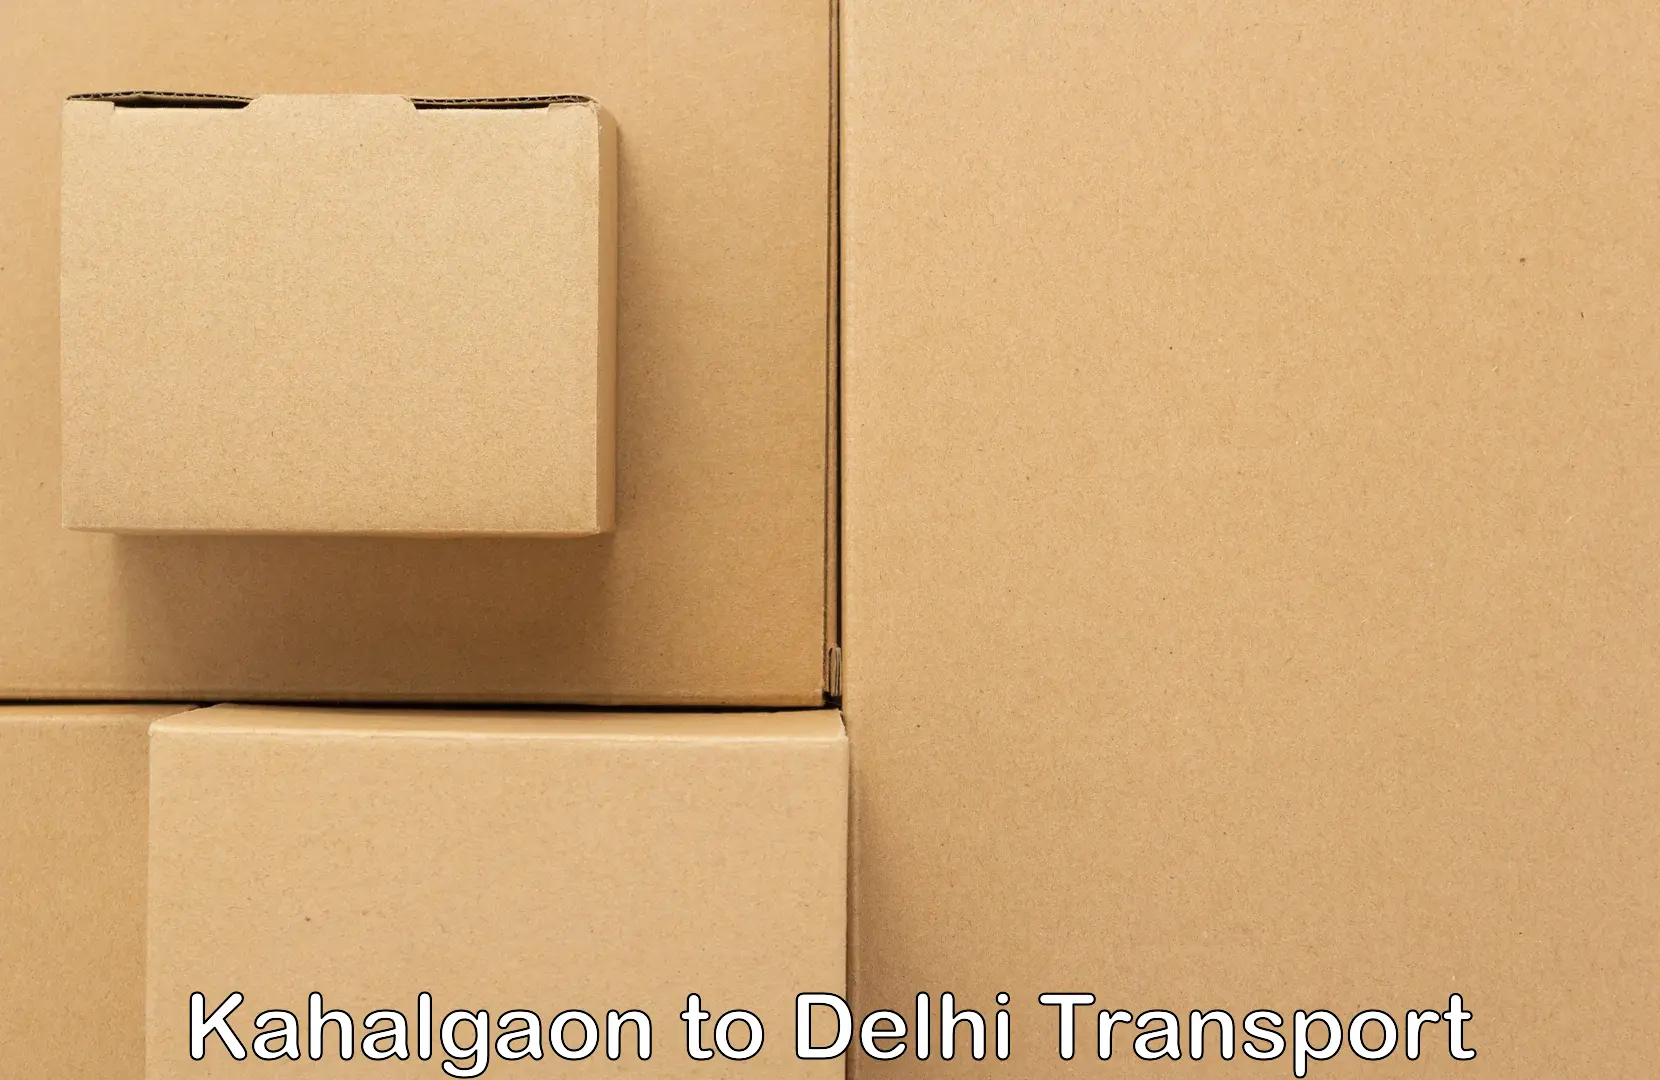 India truck logistics services Kahalgaon to IIT Delhi